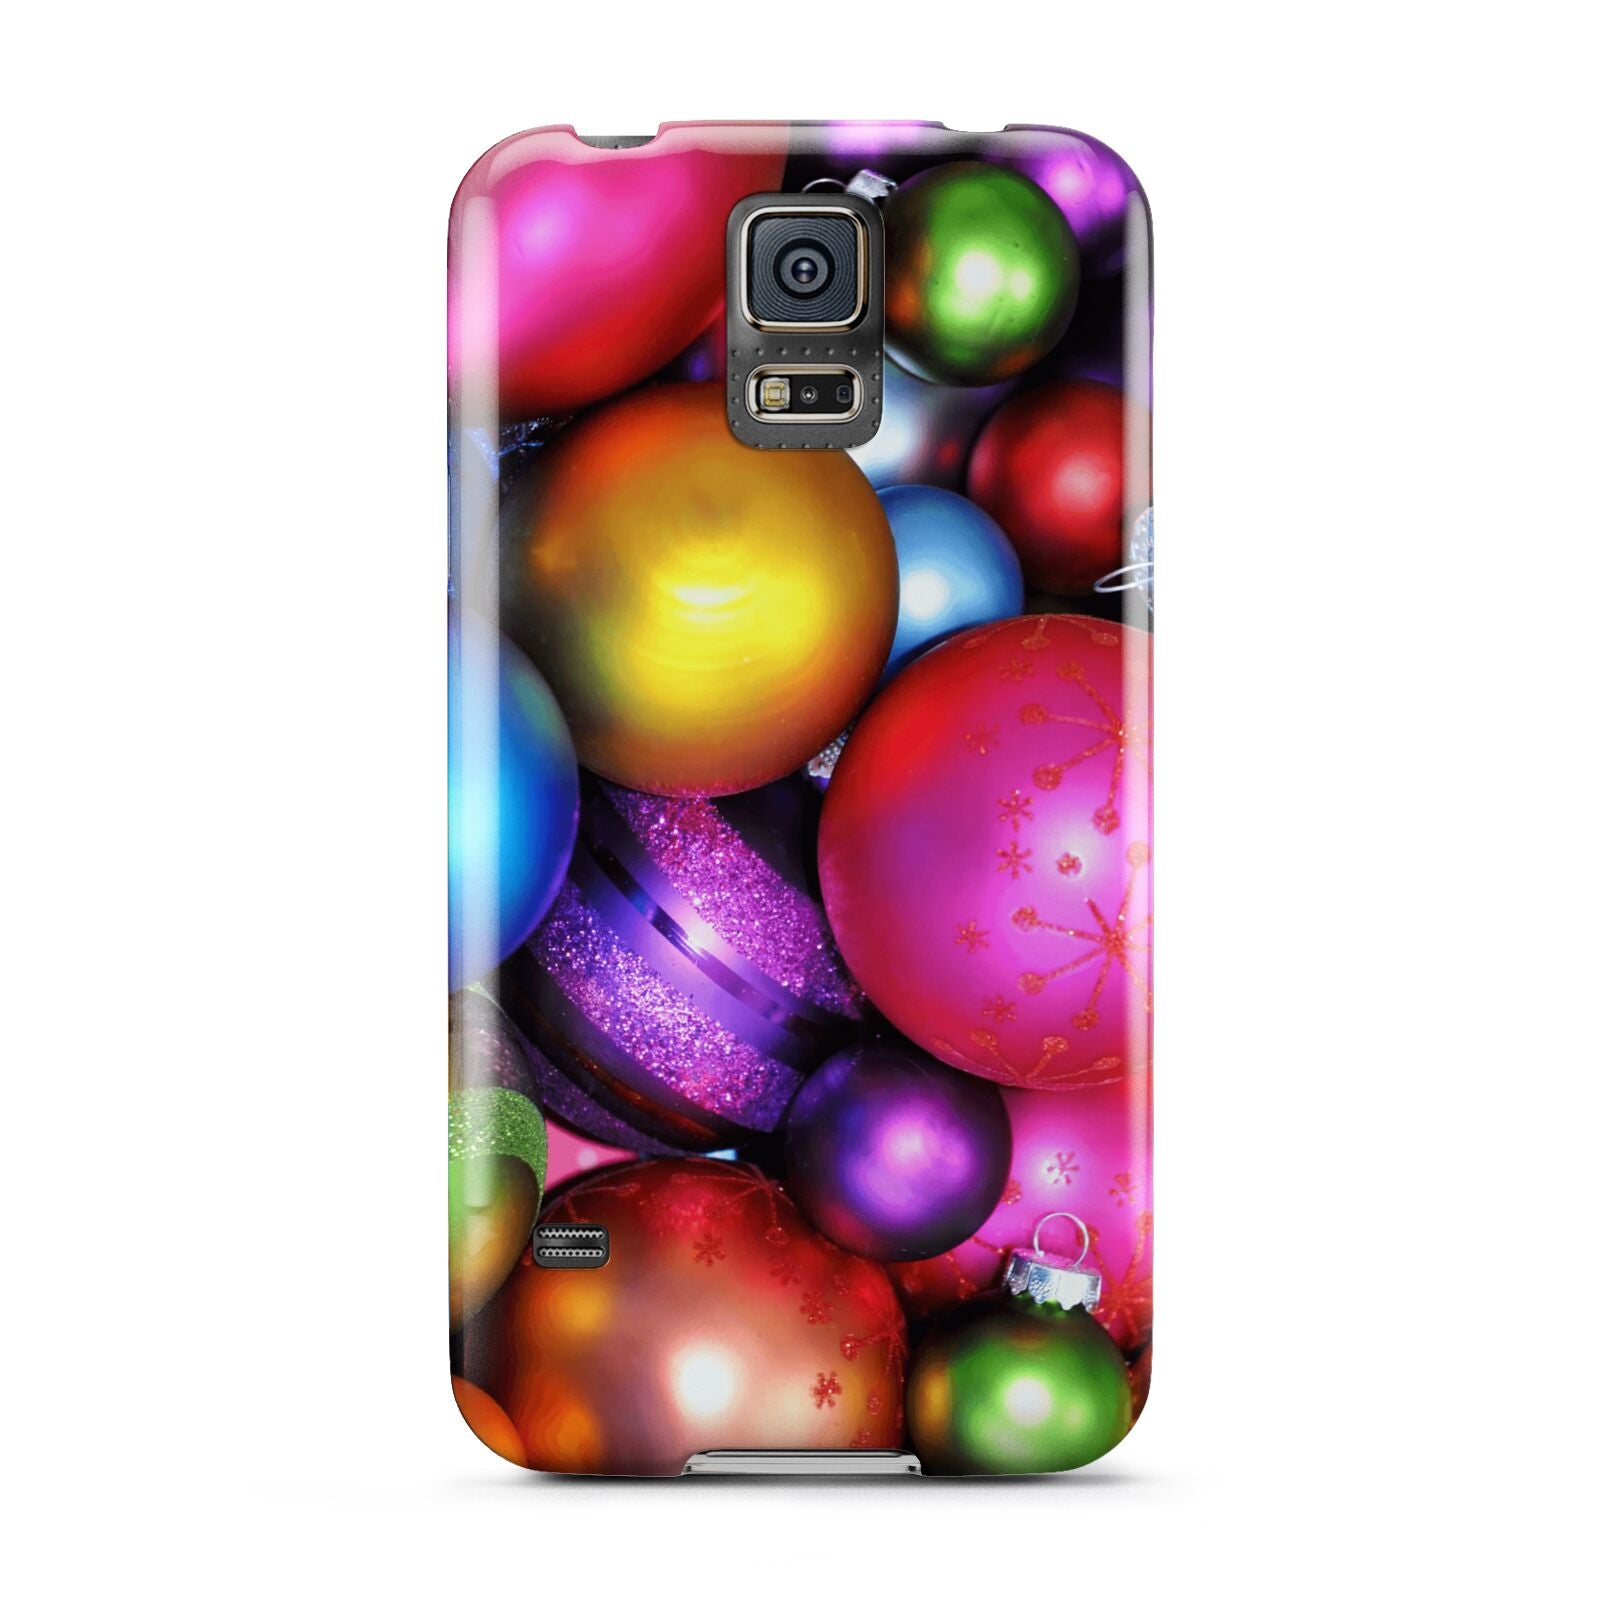 Bauble Samsung Galaxy S5 Case